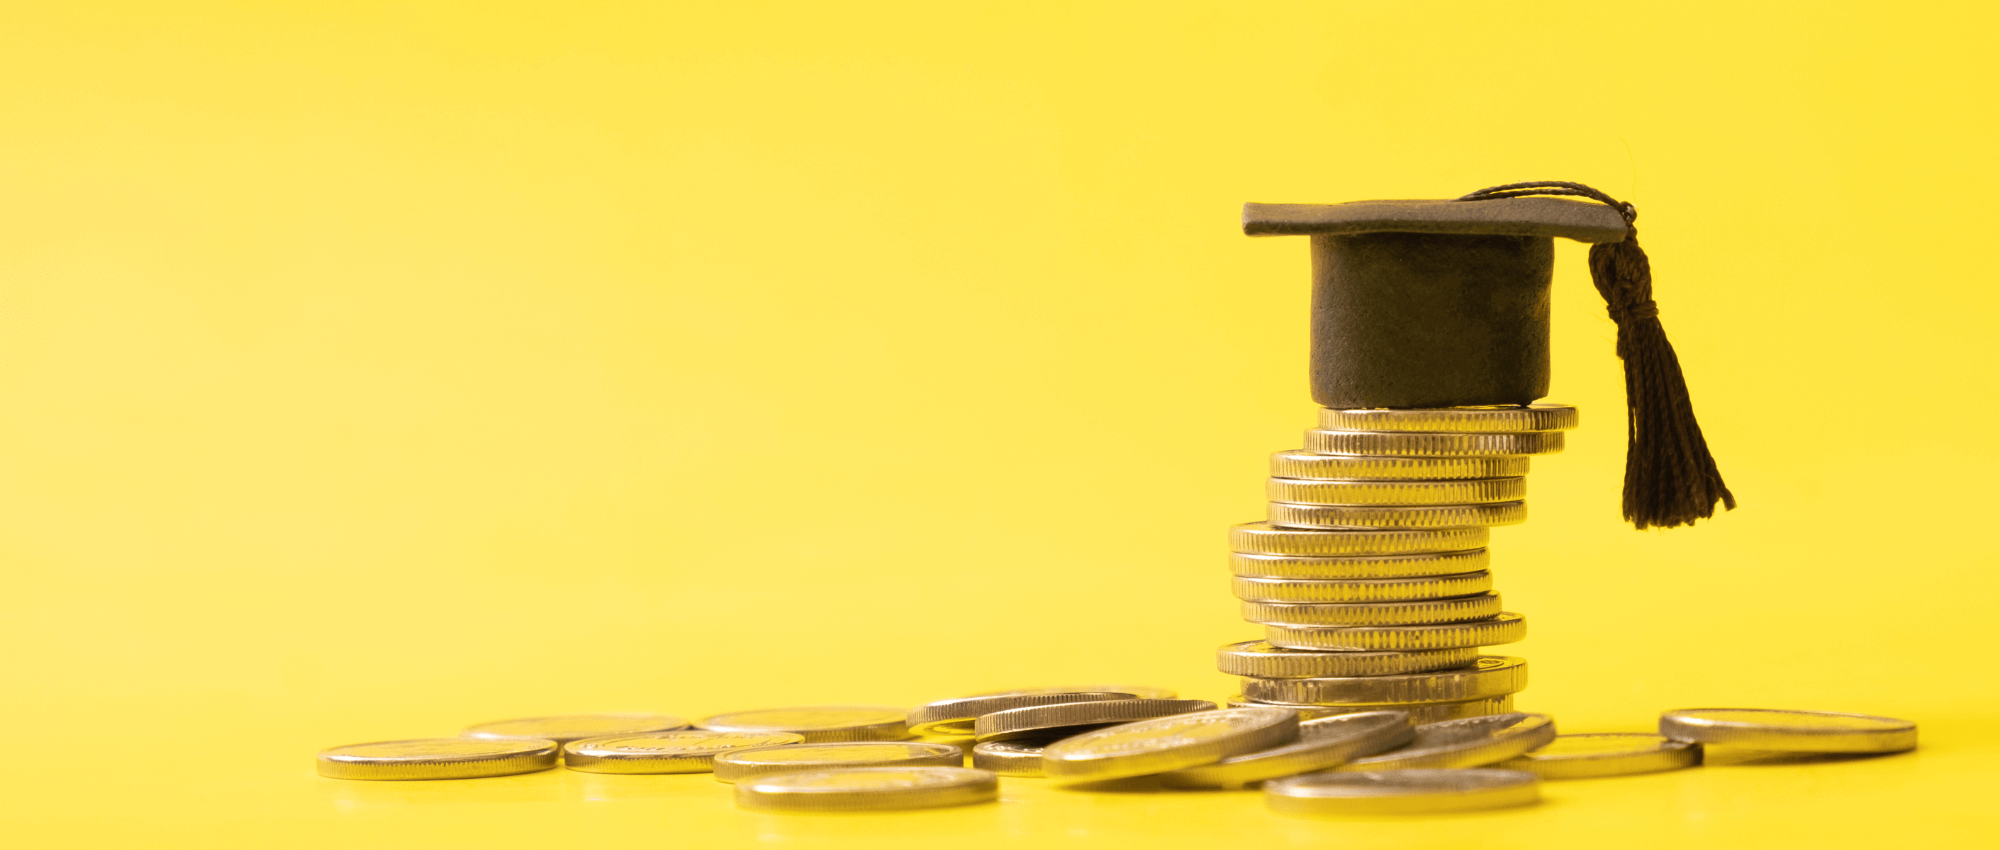 Coins and a graduation cap